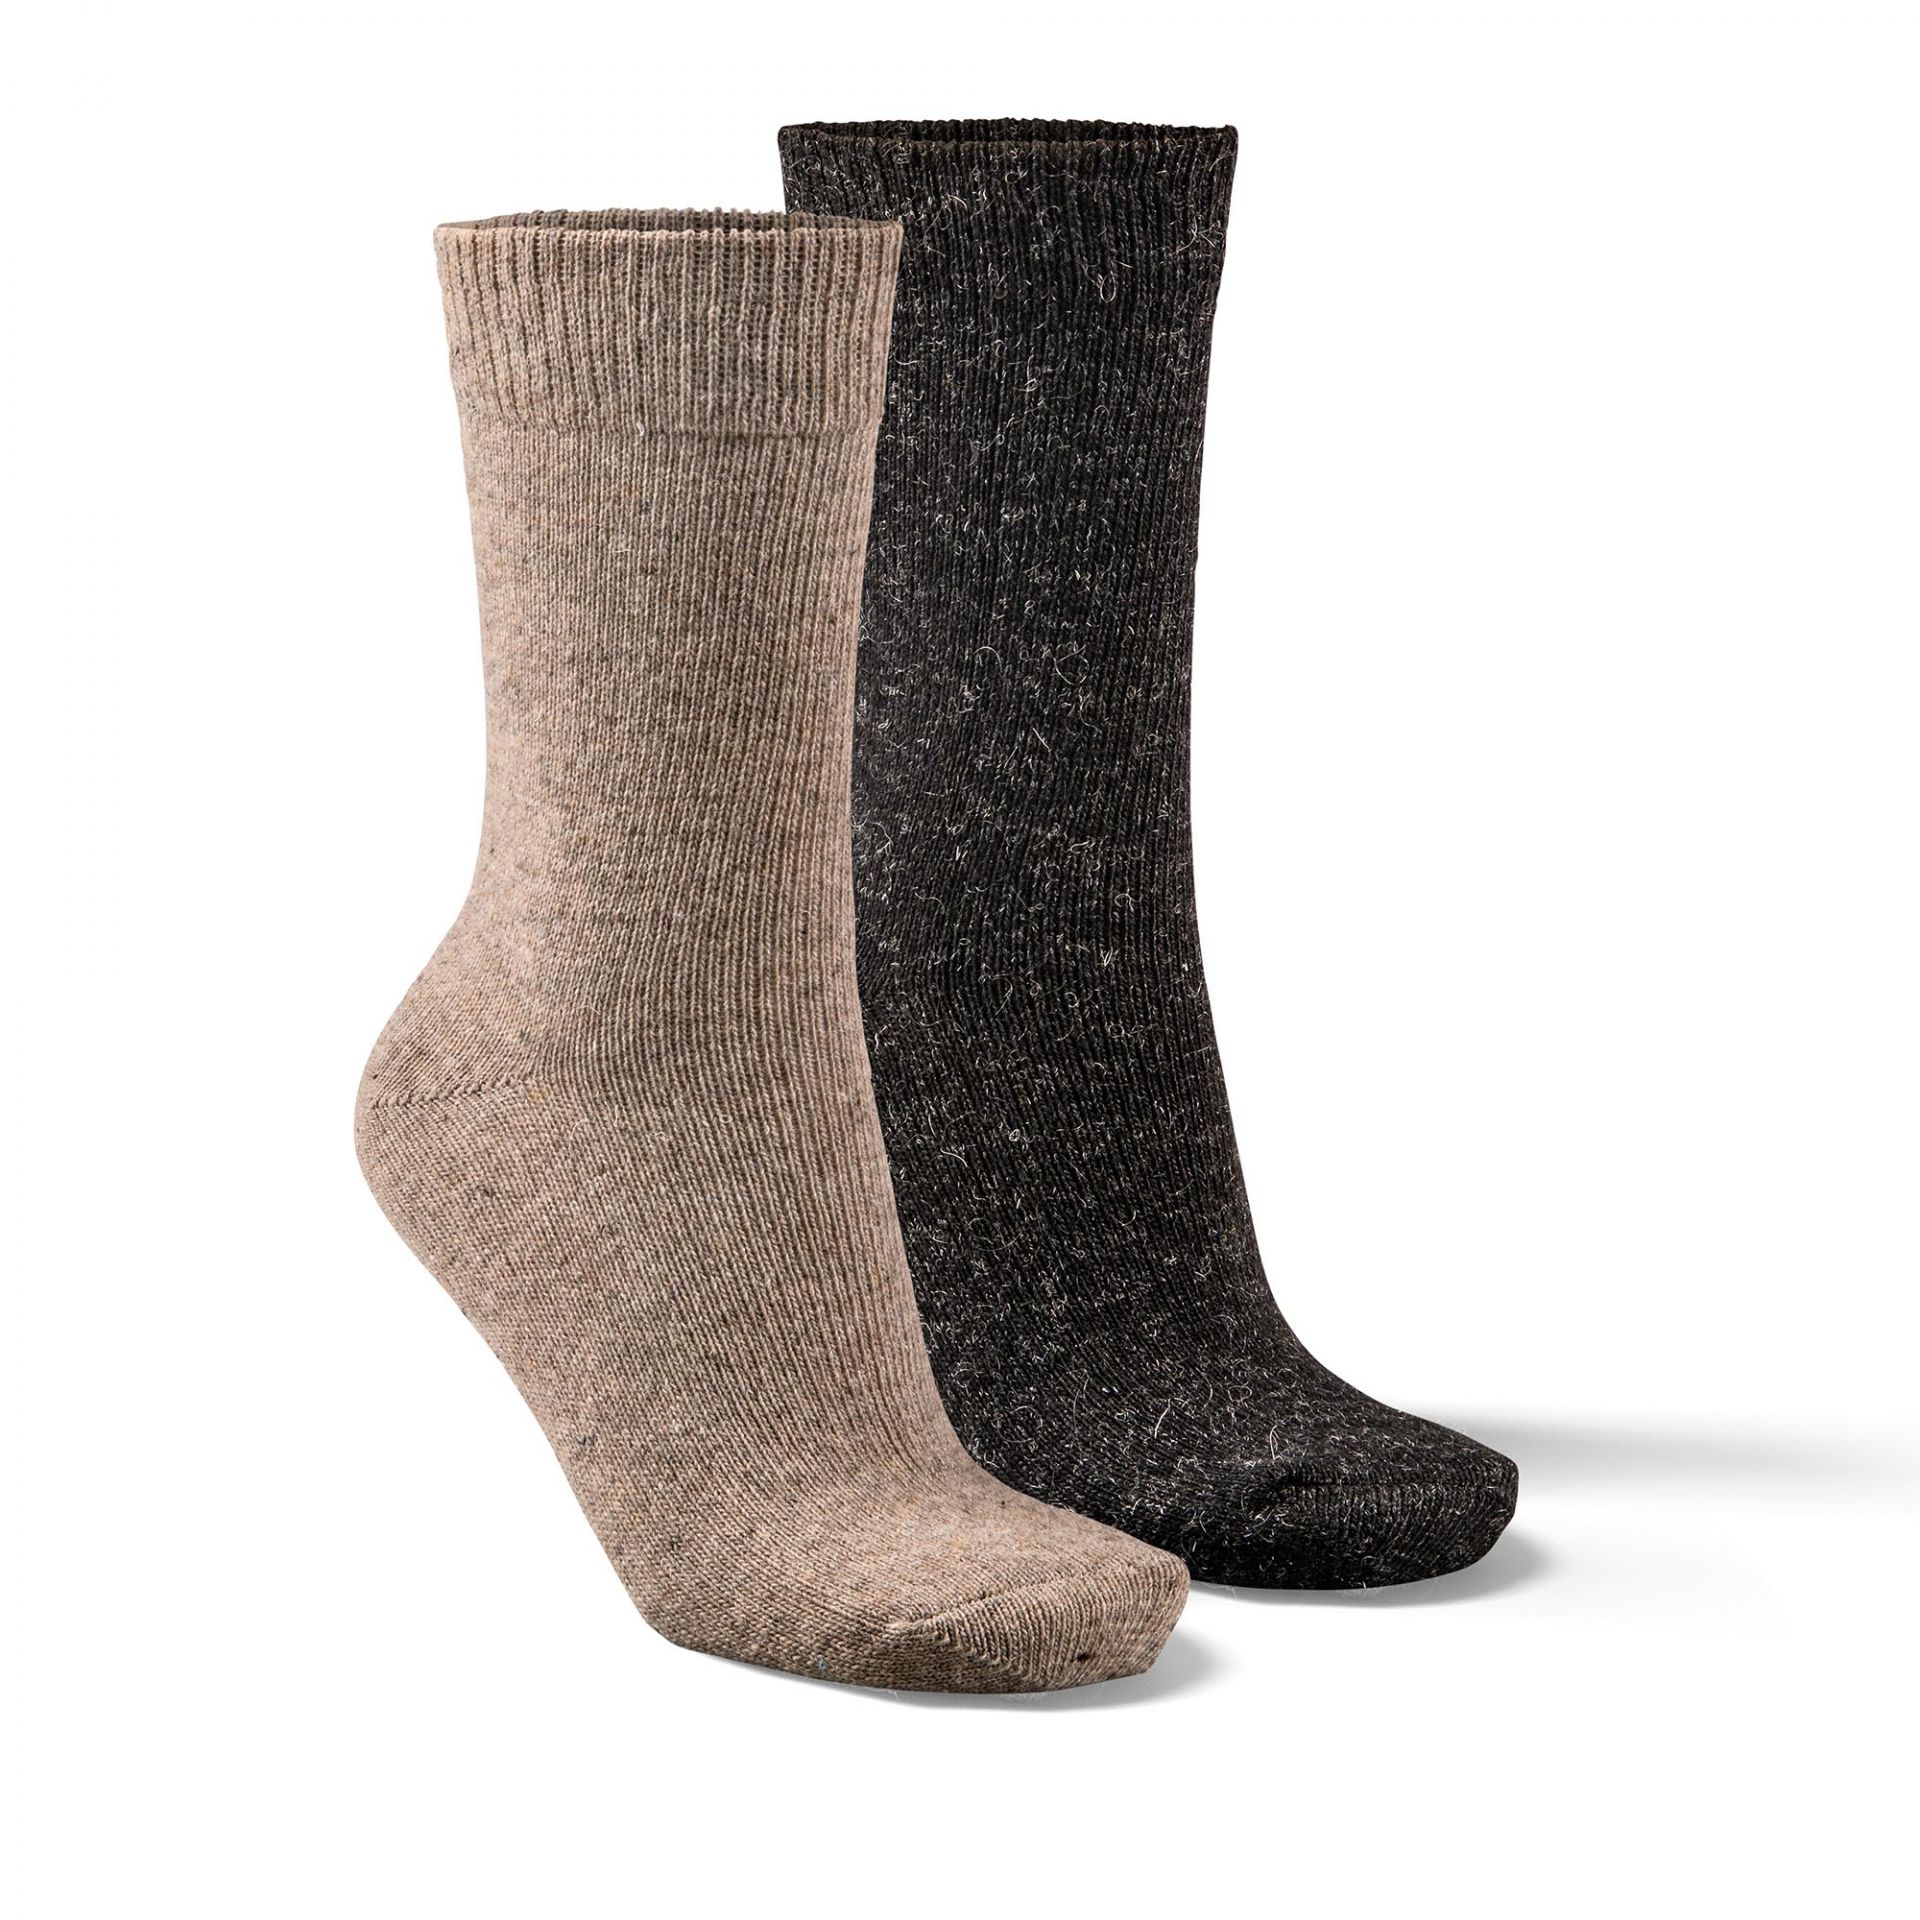 Alpaka barevné ponožky - duopack Velikost: 43 - 46, Zvolte variantu: hnědá/černá